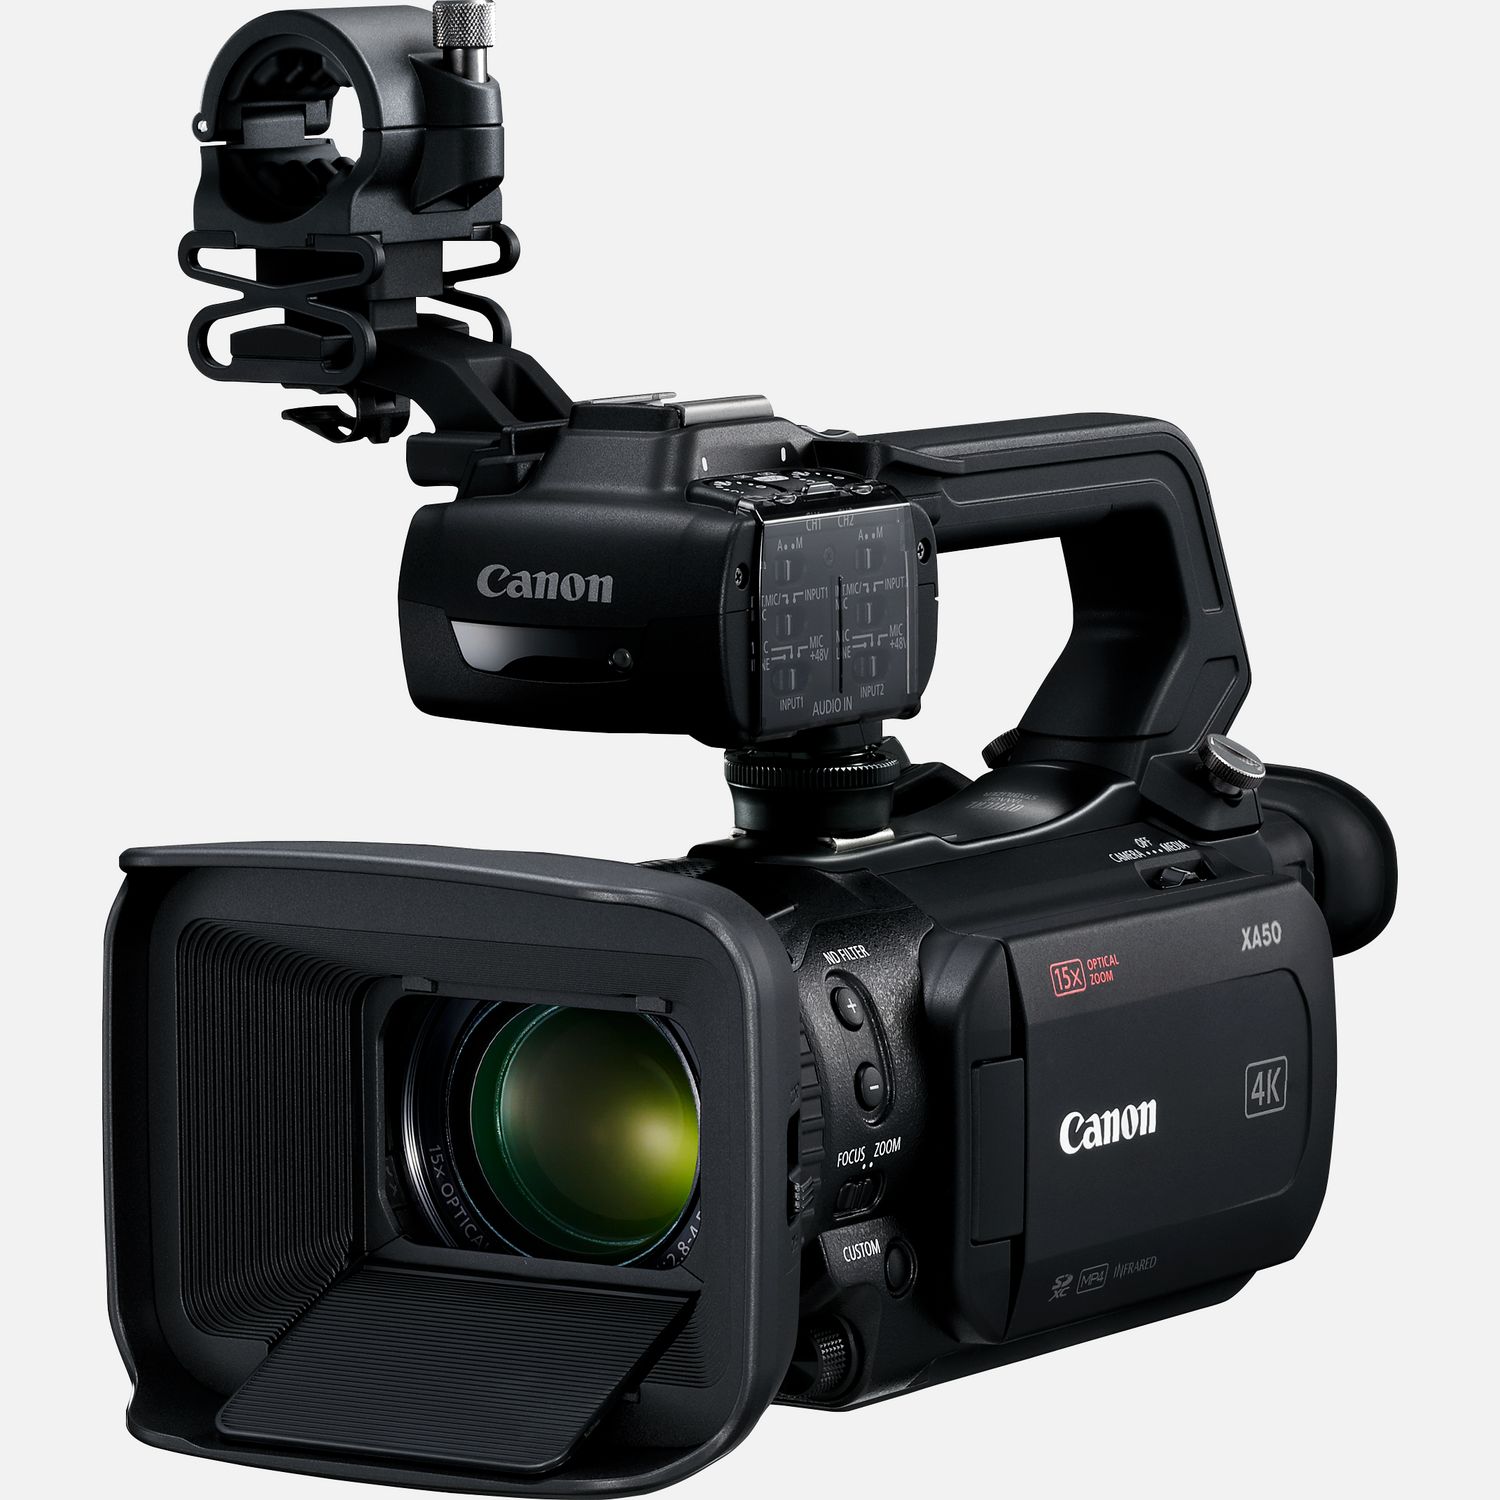 Die XA50 ist ein uerst kompakter und leichter Camcorder  ideal fr 4K-Filmaufnahmen mit vielen Funktionen. Dieser Camcorder eignet sich fr Dokumentarfilme und den Journalismus, und kann unabhngig vom Kenntnisstand von erfahrenen Filmemachern, Studenten und sogar von Einsteigern verwendet werden. Mit dem beeindruckenden Dual Pixel CMOS AF, 15fach optischem Zoom, 9-Lamellen-Irisblende, 4K UHD und Full HD liefert er eine exzellente Bildqualitt voller Details. Die XA50 untersttzt die Aufzeichnung in verschiedenen Formaten wie XF-AVC und MP4. XF-AVC 4K UHD 160 Mbps wird mit 25p aufgenommen und FullHD 45 Mbps mit 50p/50i/25p. Darber hinaus sind zwei SD-Kartensteckpltze, zwei XLR-Anschlsse und ein niedriger Stromverbrauch nur einige der zustzlichen professionellen Features, die diesen Camcorder ideal fr Filmproduktionen aus der freien Hand machen.  Vorteile      Kompaktes und leichtes Design mit professioneller Funktionalitt einschlielich Infrarot-Modus, mit dem du Videos bei wenig bis gar keinem Umgebungslicht aufnehmen kannst          Das 3,0-Zoll-Display, ein intuitives Men und konfigurierbare Tasten ermglichen eine bersichtliche und einfache Bedienung          Der groe 1,0-Zoll-Typ CMOS-Sensor und der DV6Prozessor ermglichen 4K-UHD- und fortschrittliche FullHD-Videos in Zeitlupe und Zeitraffer, und sorgen gleichzeitig fr eine hohe Empfindlichkeit und rauscharme Bilder          Eine 9-Lamellen-Irisblende und ein ND-Filter ermglichen ein schnes Bokeh bei gleichzeitiger Schrfentiefe          Der enorme Brennweitenbereich von 25,5-382,5mm, 4K-Video, 15fach Zoom und Super-UD-Linsen tragen zur enormen Bildqualitt des Camcorders bei          Die 5-Achsen-Bildstabilisierung hilft beim Filmen unterwegs und bei Aufnahmen aus der freien Hand  ideal fr News- und Dokumentaraufnahmen unterwegs          Die XA50 untersttzt diverse Aufzeichnungsformate einschlielich XF-AVC und MP4, und ermglicht mit zwei SD-Karten-Steckpltzen die gleichzeitiger Backup- und die fortlaufende Aufnahme          Dual Pixel CMOS AF und Touch & Drag-AF ermglichen eine intuitive Fokussteuerung          Zwei XLR-Anschlsse, HDMI mini-Ausgang, 4-Kanal-Linear-PCM und niedriger Stromverbrauch sind weitere professionelle Features fr die Audio-Untersttzung          Dank eines 3,5-mm-Stereo-Mini-Eingangs und eines integrierten Stereomikrofons kann auch der Ton problemlos aufgenommen werden, den du ber einen Kopfhreranschluss per Kopfhrer berwachen kannst          Lieferumfang       XA50 Camcorder         HDU-3 Tragegriff         Akku BP-820         Kompakt-Netzteil CA-570         Fernbedienung WL-D89         Mikrofonhalter         Streulichtblende mit integriertem Objektivschutz         Netzkabel         Anleitungen              Technische Daten              Zur Aufnahme von 4K UHD, 25p XF-AVC mit bis zu 160 Mbps oder MP4 mit bis zu 150 Mbps                1,0-Zoll-Typ CMOS-Sensor                4K-Ultraweitwinkel-Objektiv (Brennweite 25,5-382,5mm)                Optimierter optischer 5-Achsen-Bildstabilisator mit Dynamic IS                Przise und zuverlssig mit Gesichtserkennung                Verwendet den 4K UHD-Sensor, um erstklassige Full HD-Bilder zu generieren                Professionelle Codecs zur effizienten Aufzeichnung von hochwertigen 4K- und FullHD-Videos                Der Infrarot-Modus ermglicht hochwertige Videoaufnahmen bei extrem wenig bis gar keinem Umgebungslicht          Alle technischen Daten zeigen